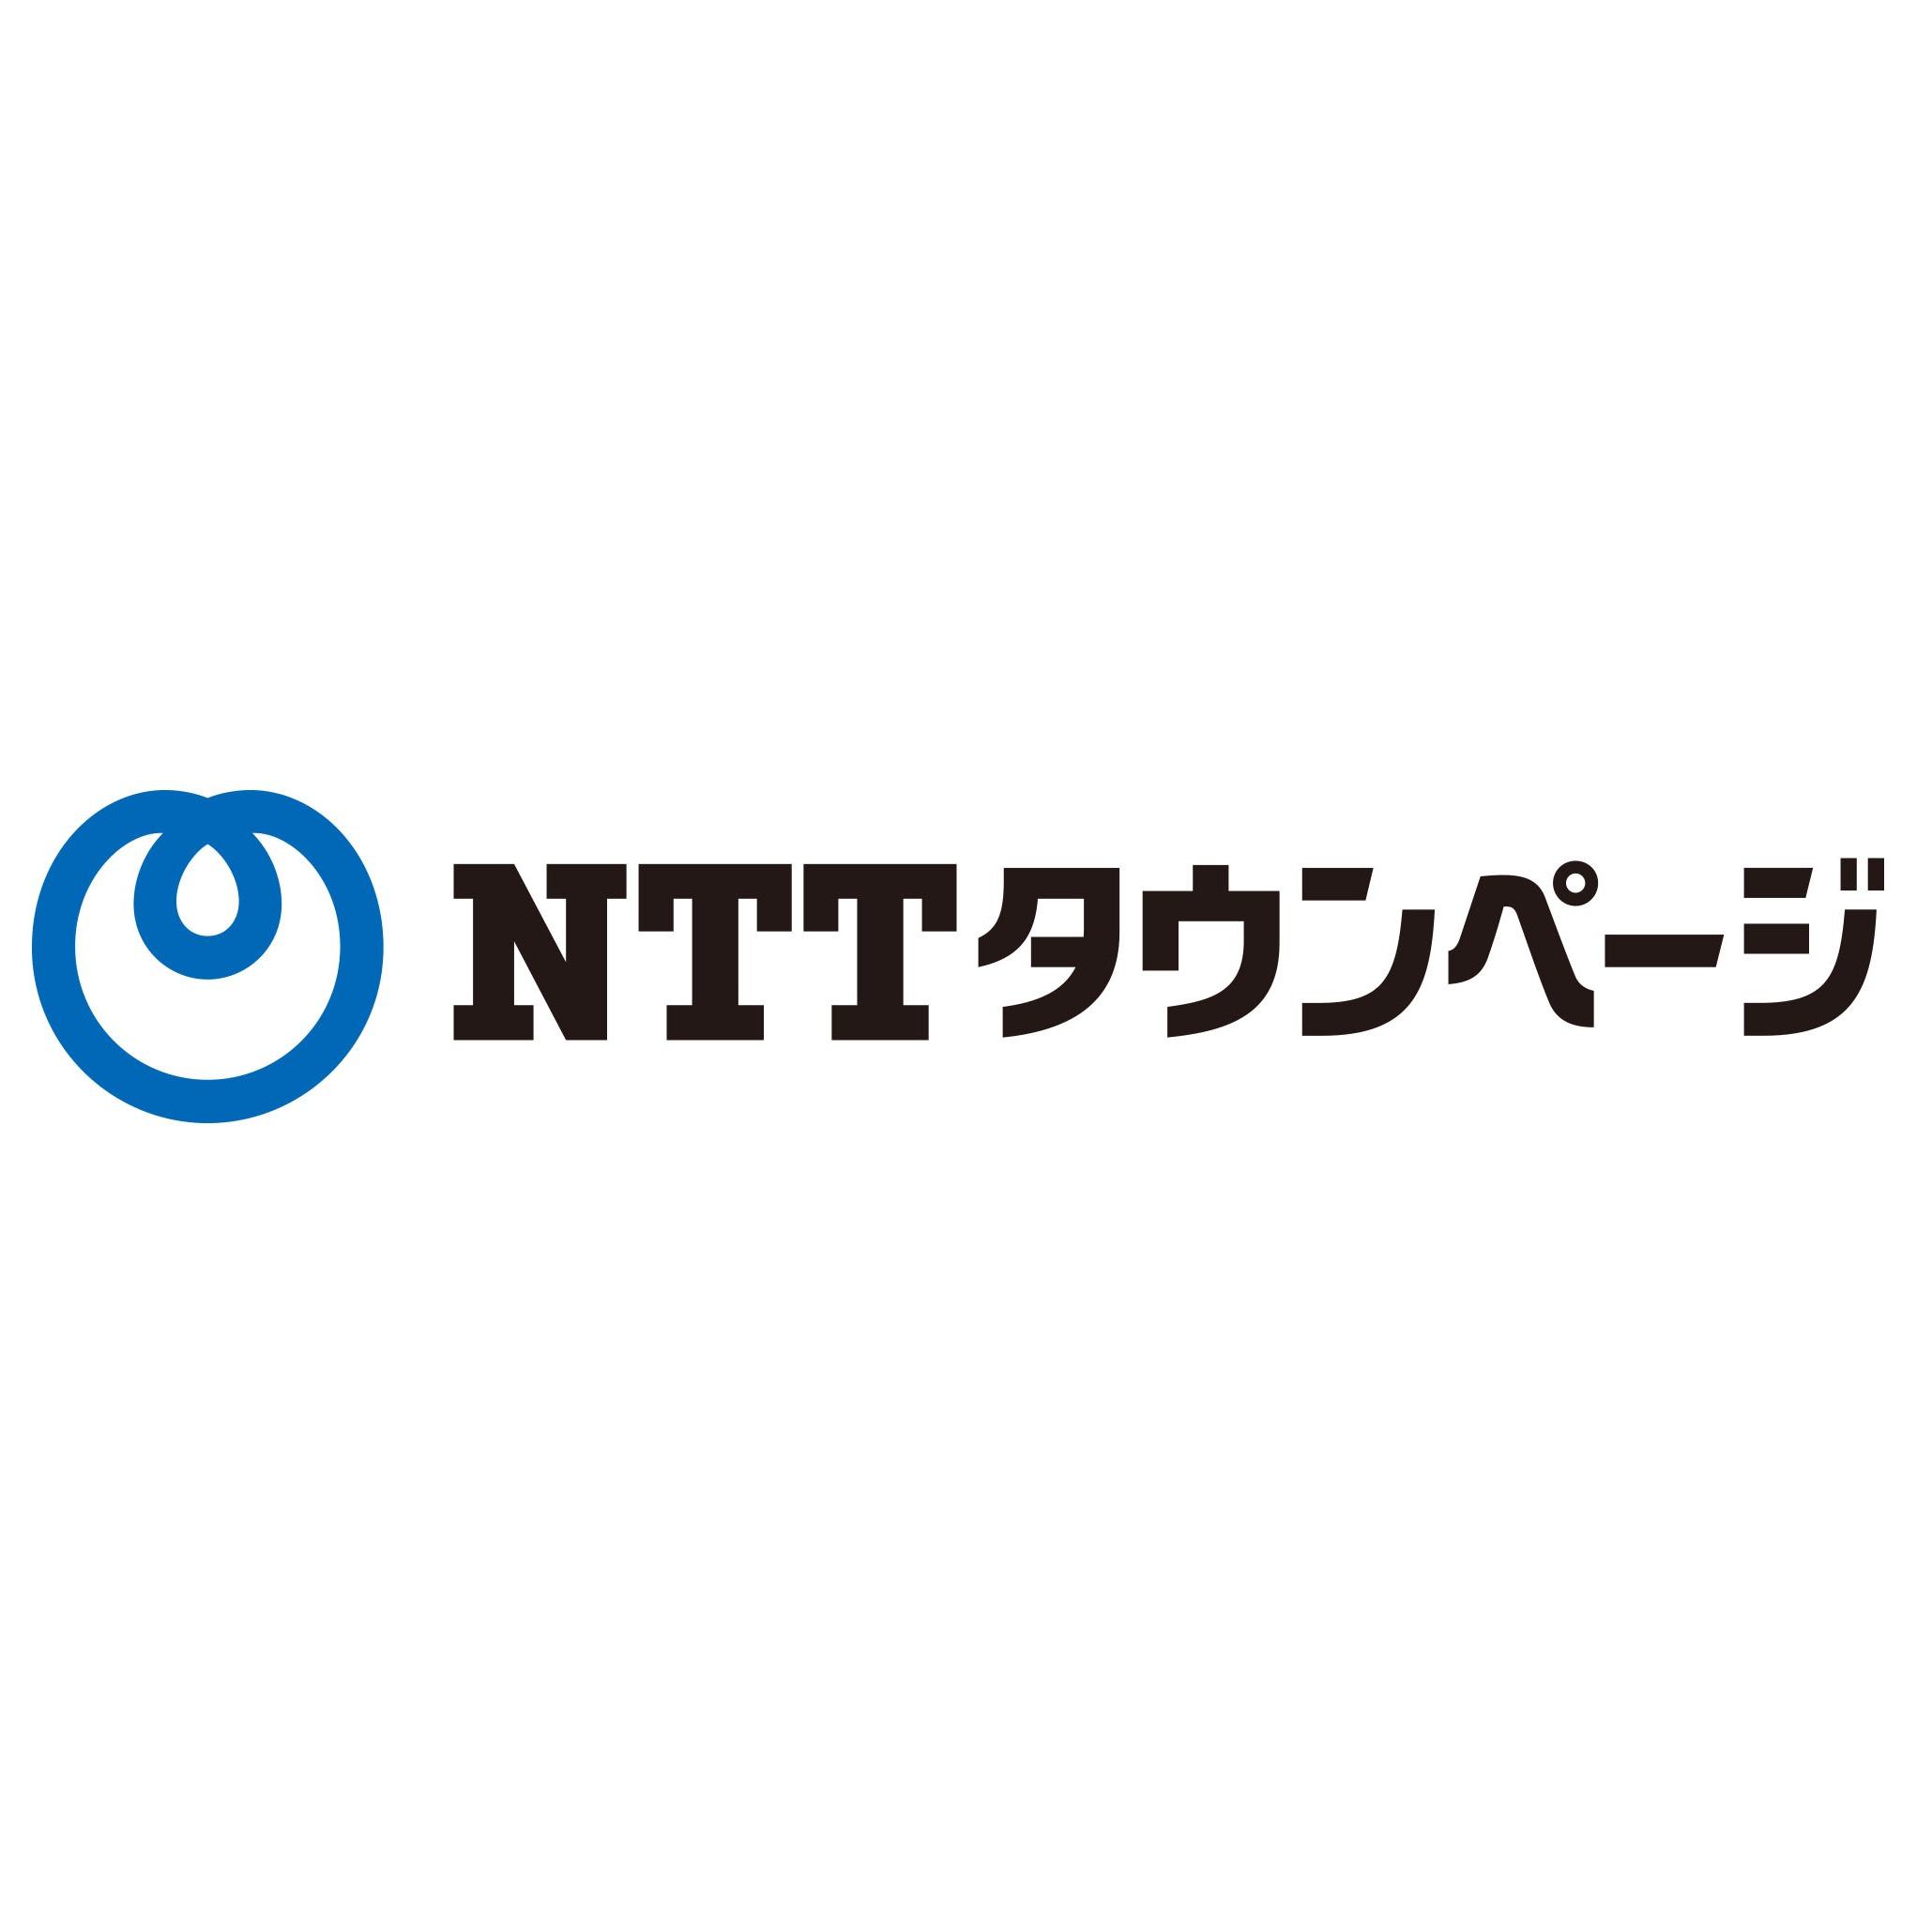 NTTタウンページ株式会社 Logo